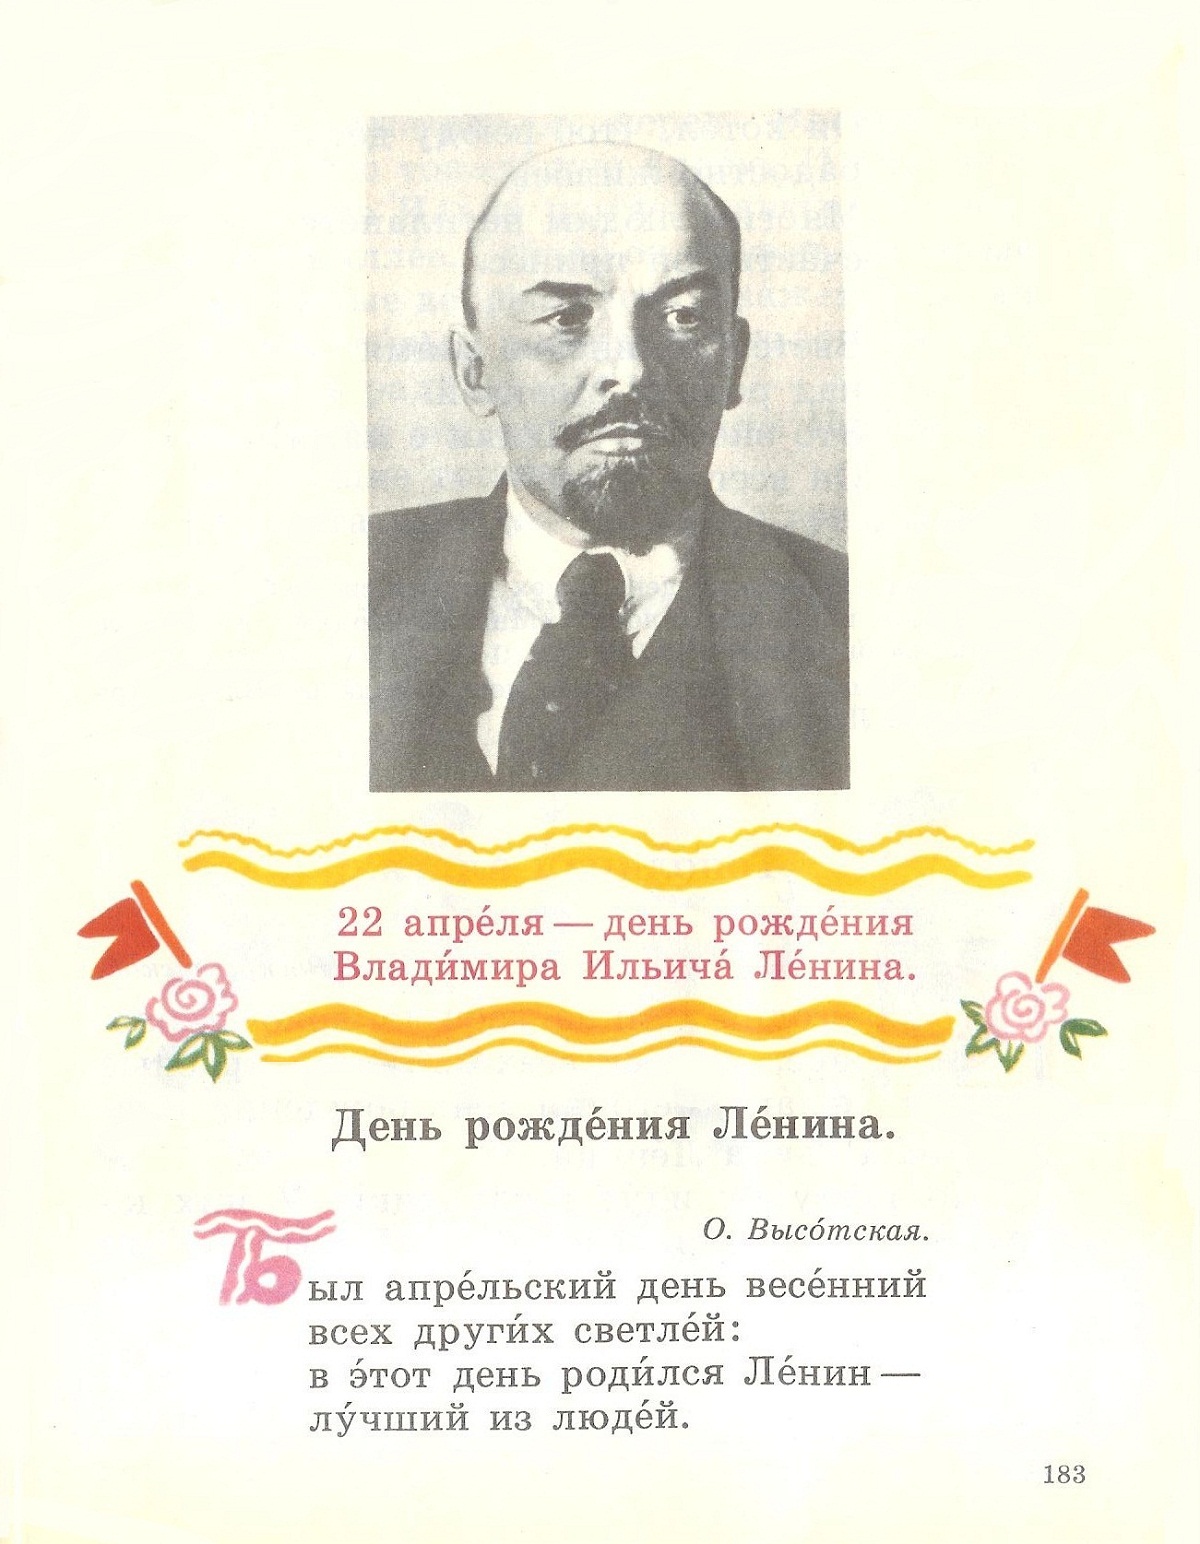 22 Апреля день рождения Владимира Ильича Ленина